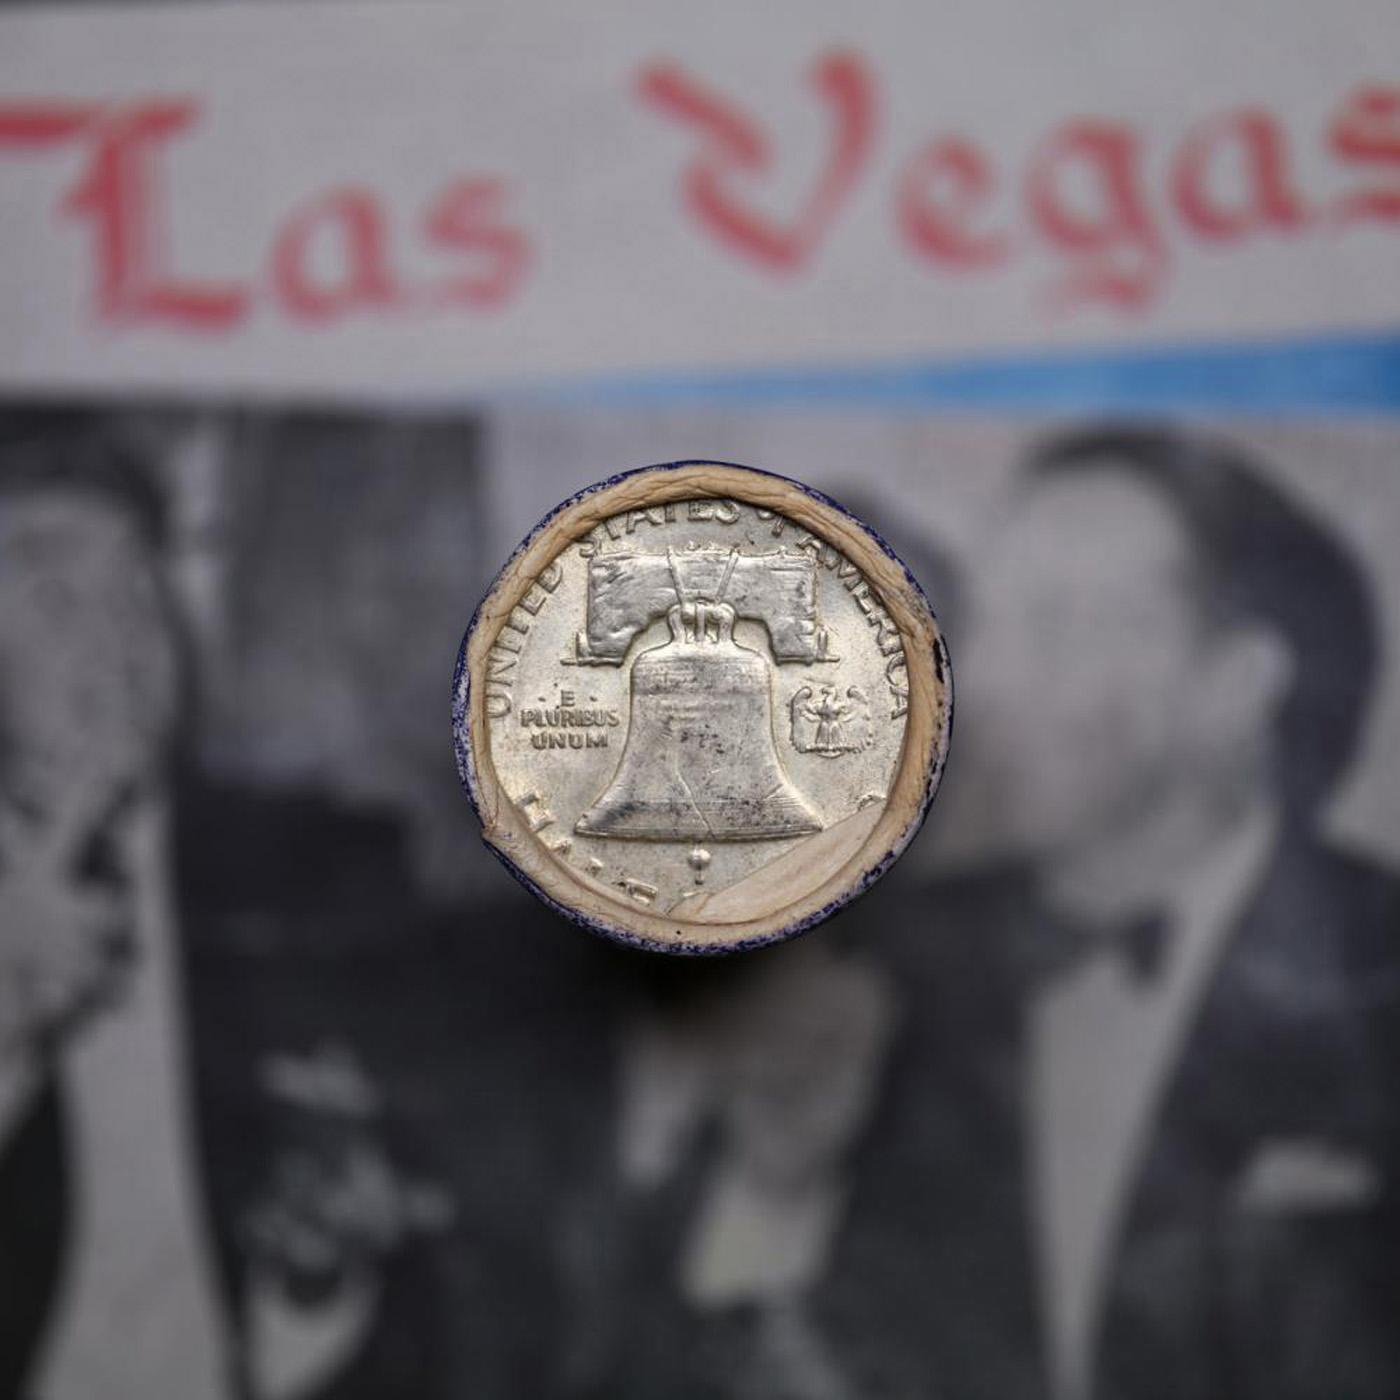 ***Auction Highlight*** Old Casino 50c Roll $10 Halves Las Vegas Casino Aladdin 1938 walker & P fran